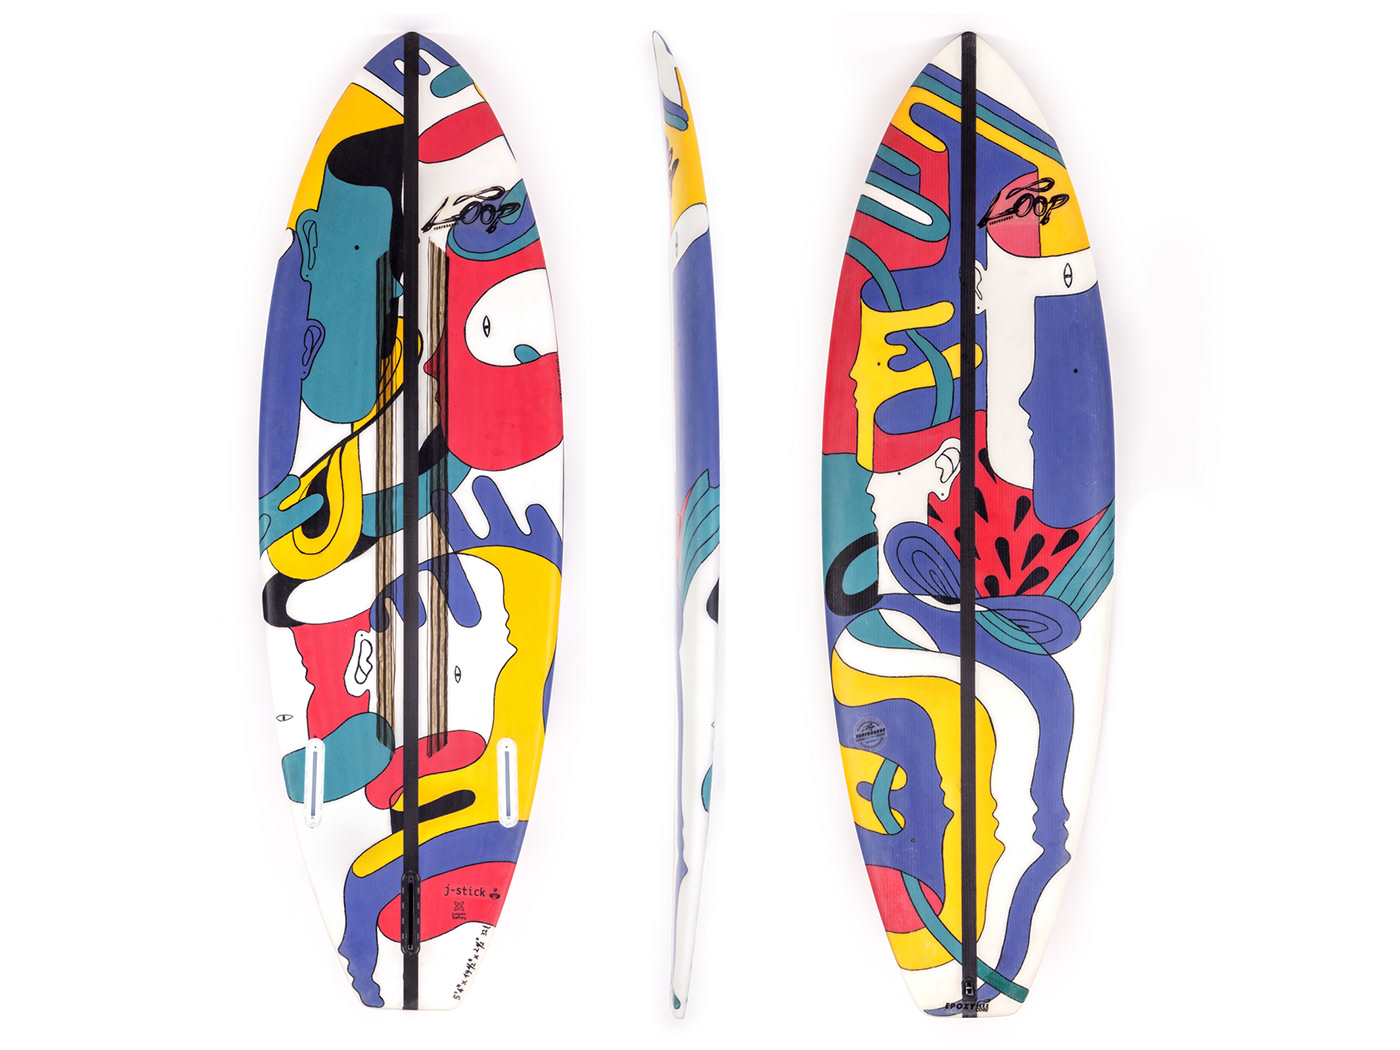 #loopsurfboards #shapedbynature #handshaped #groveller #custom #surfboard #workout #work #color #shape #ecosurfboards #design #surf #instasurf #surfshop #entropyresin #surfphotography #surfporn #surfspot #surfart #surfer #surfline #surftrip #surfstyle #entropyresin #ecosurf #shape #room #torinographicdays #art